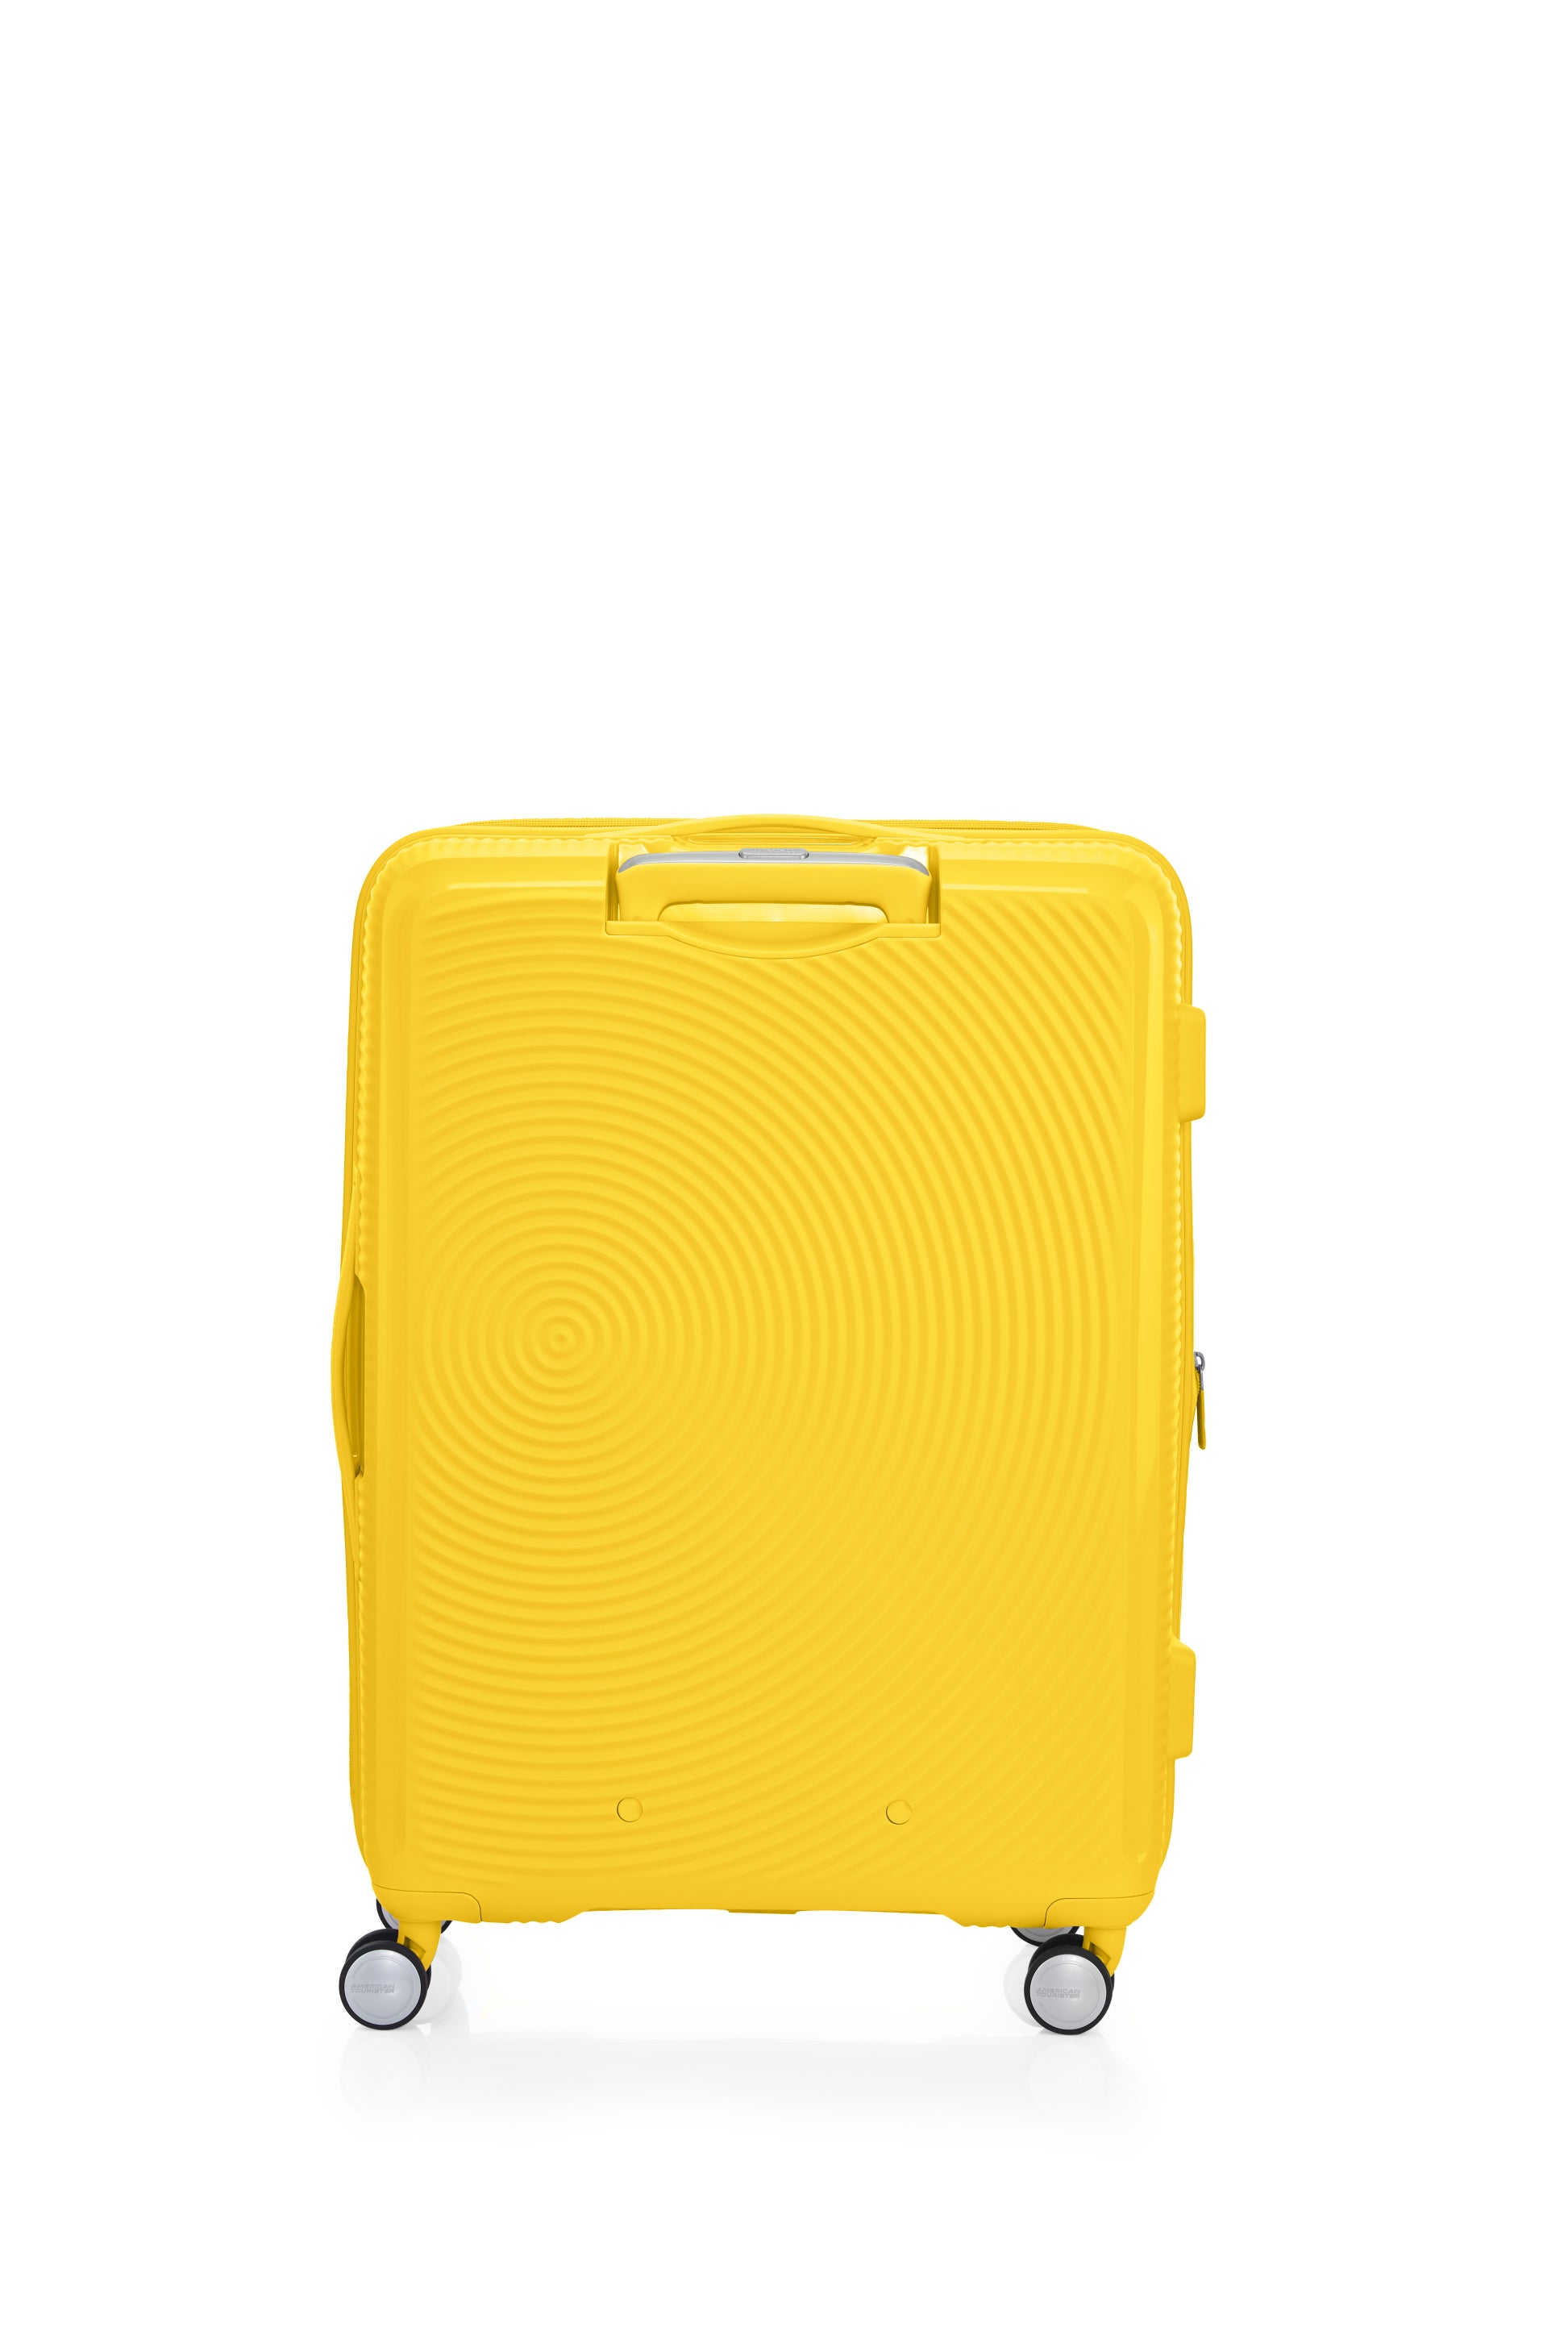 American Tourister - Curio 2.0 69cm Medium Suitcase - Golden Yellow-2